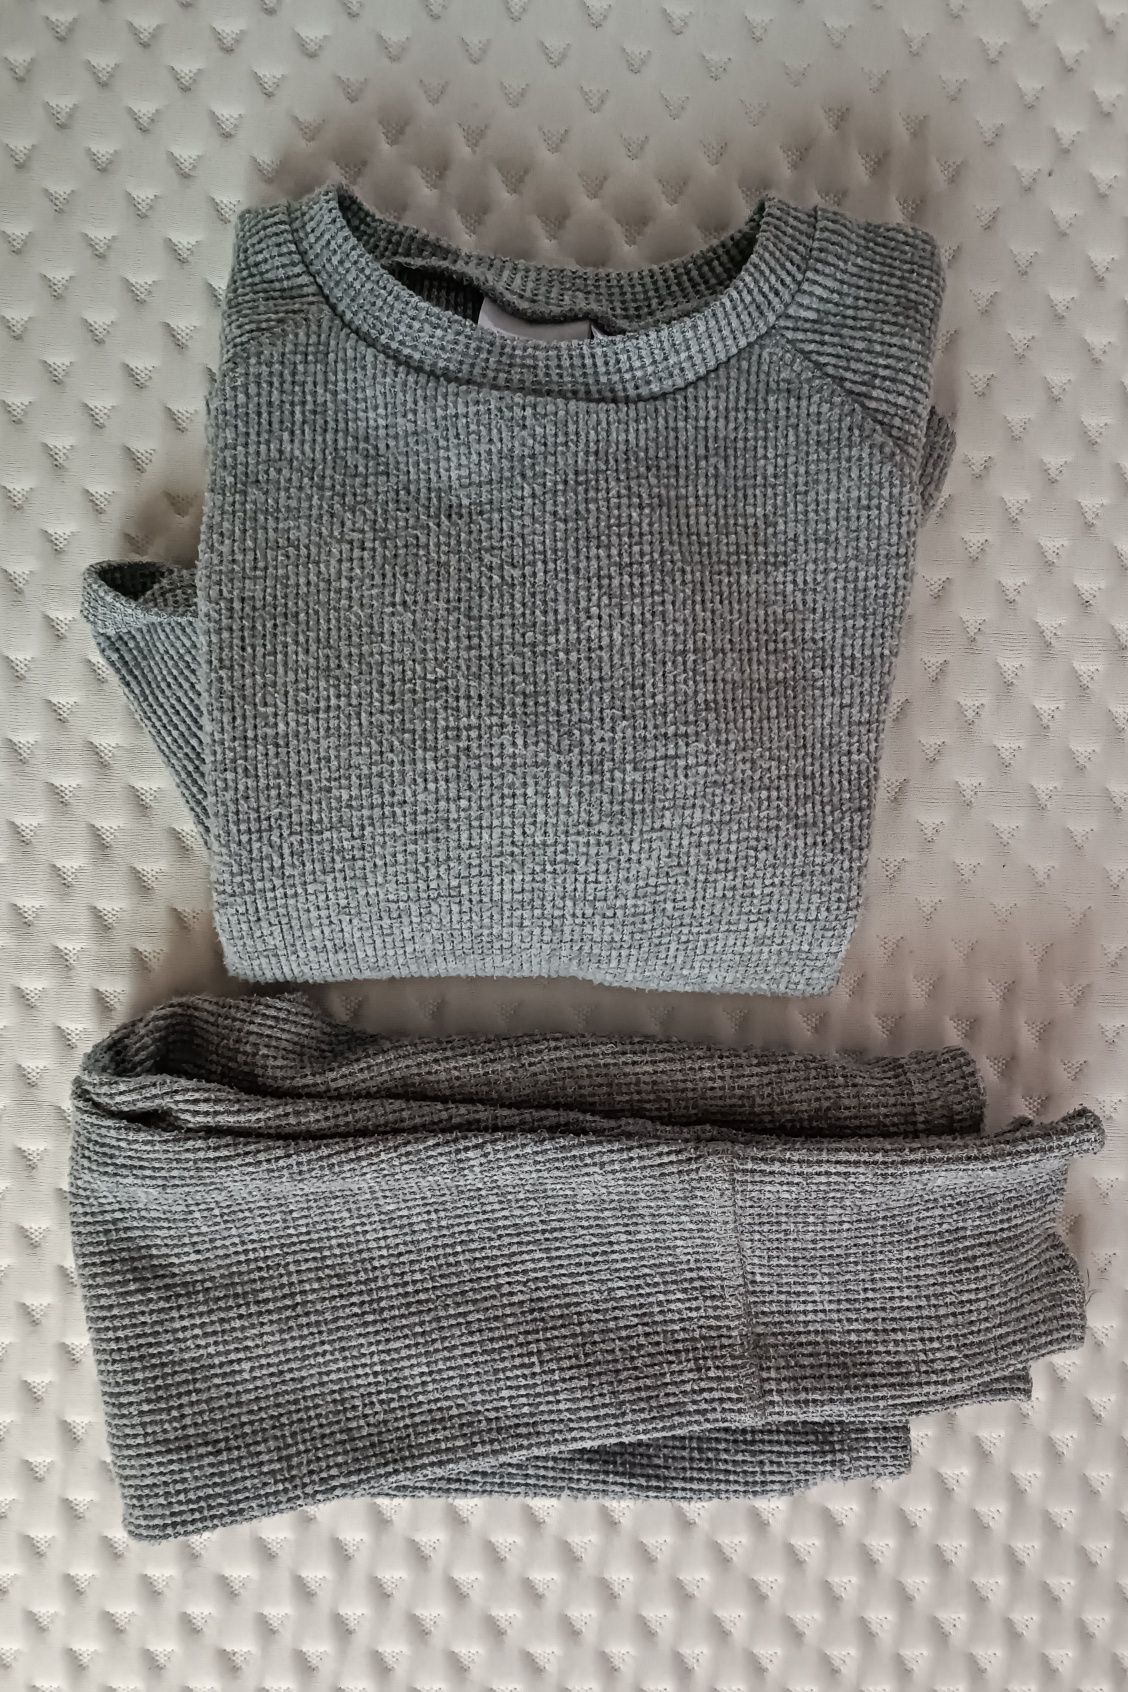 Komplet Zara 110 bluza legginsy